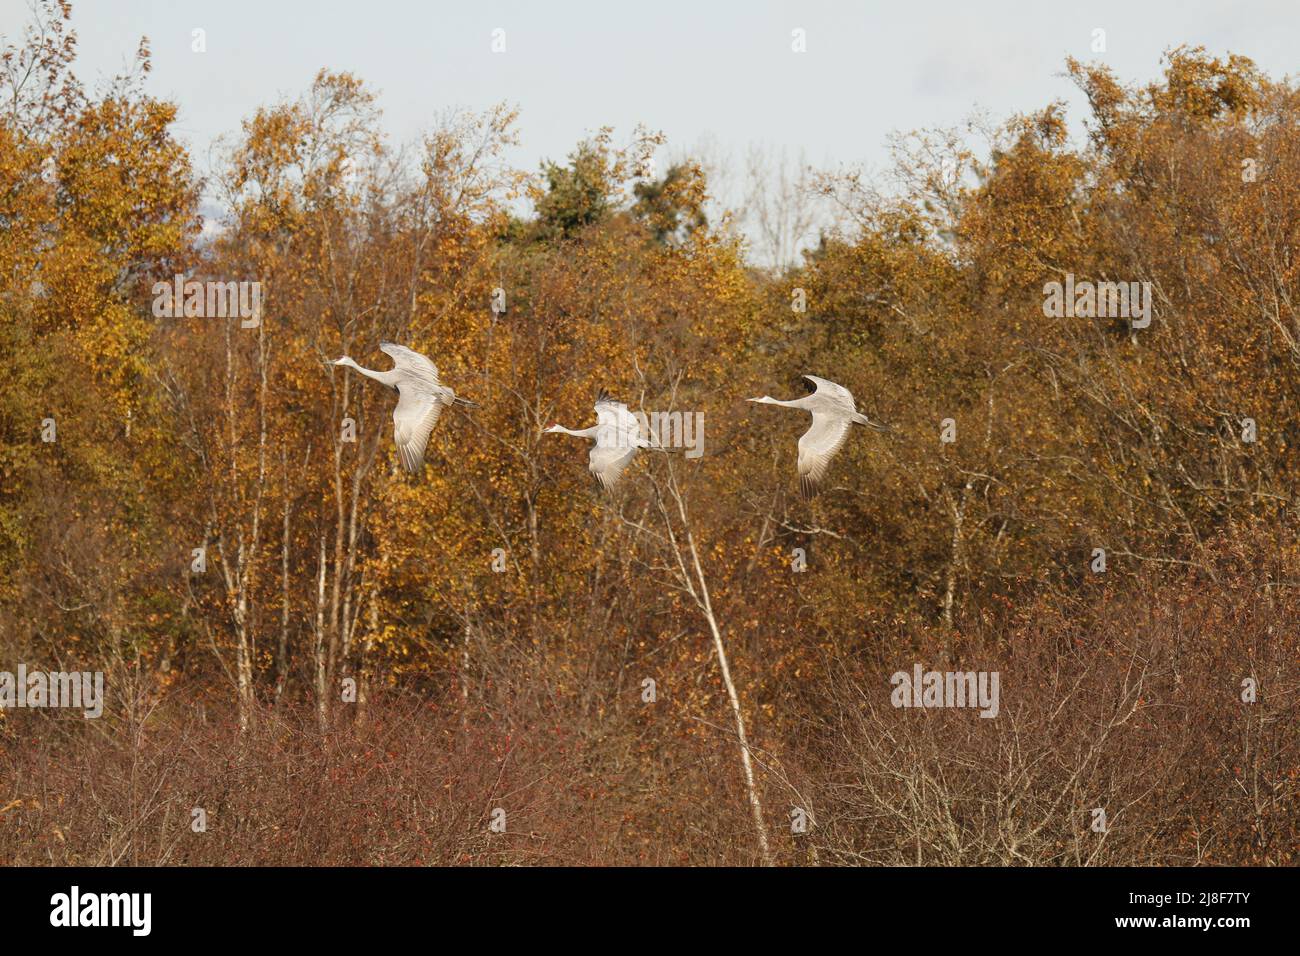 Trois grues du Canada (Antigone canadensis) volant ensemble devant des arbres bruns ou orange. Prise à Delta, C.-B., Canada. Banque D'Images